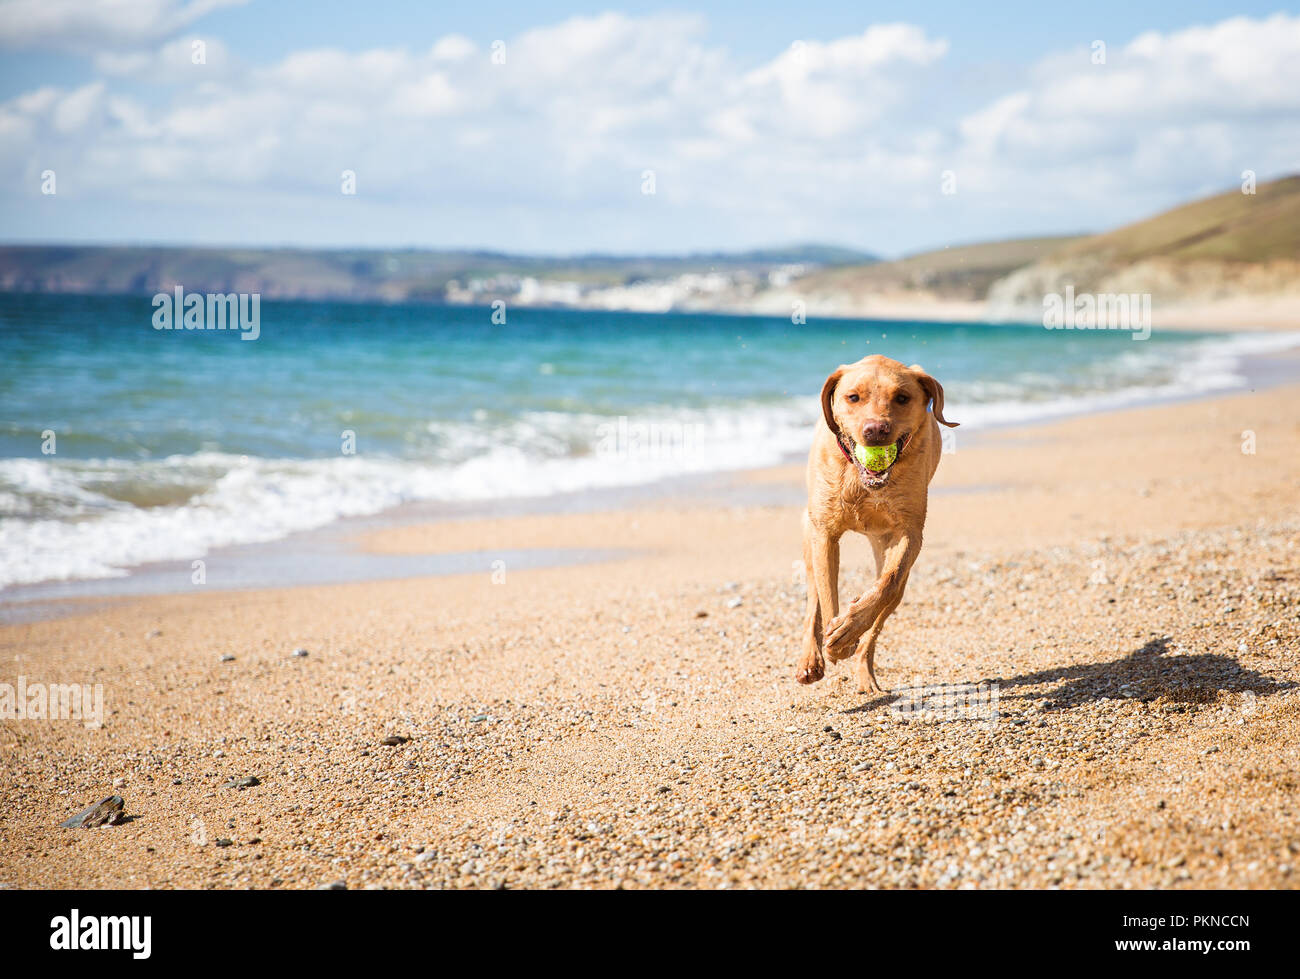 Ein glückliches, gelben Labrador Retriever Hund läuft auf einer einsamen Sandstrand und Durchführung oder Abrufen einer Tennis Ball im Maul Stockfoto